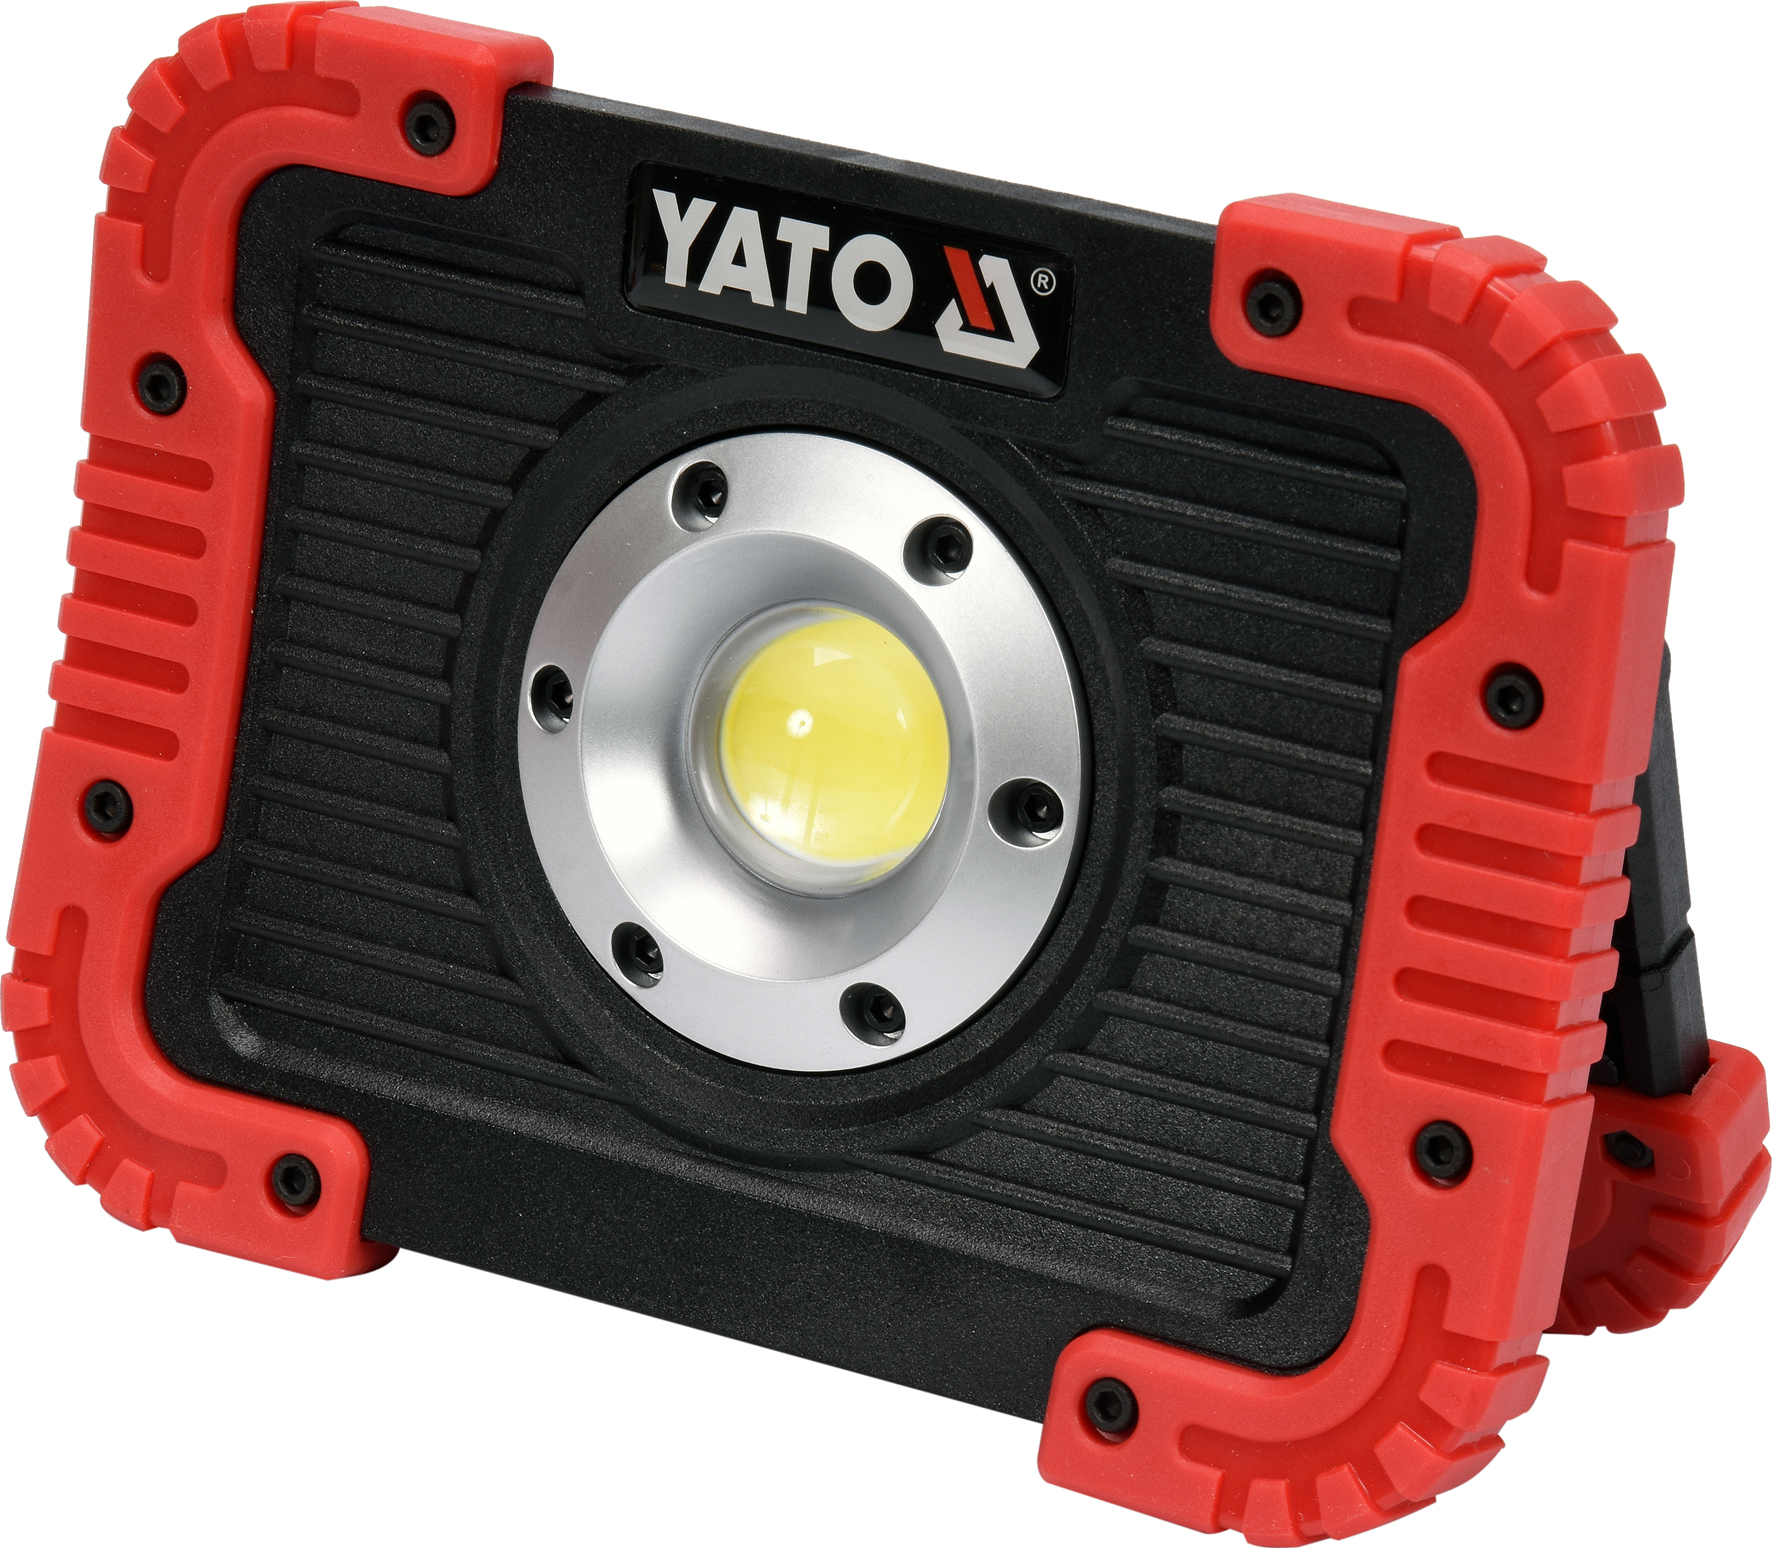 Nabíjecí COB LED 10W svítilna a powerbanka Yato YT-81820 + Dárek, servis bez starostí v hodnotě 300Kč